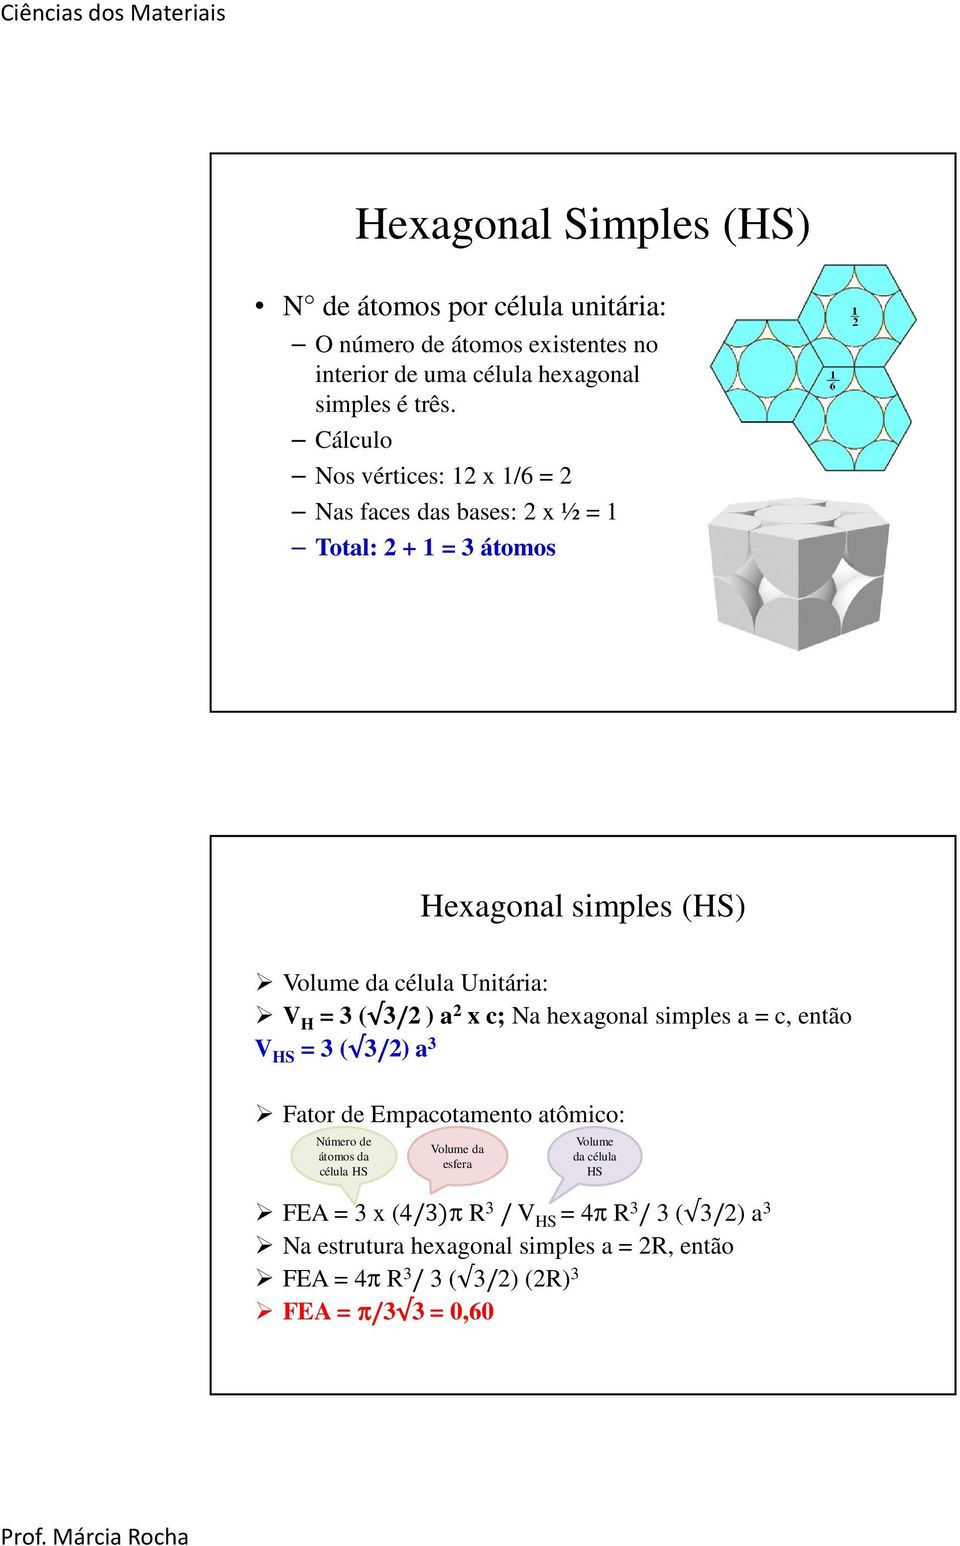 3/2 ) a 2 x c; Na hexagonal simples a = c, então V HS = 3 ( 3/2) a 3 Fator de Empacotamento atômico: Número de átomos da célula HS Volume da esfera